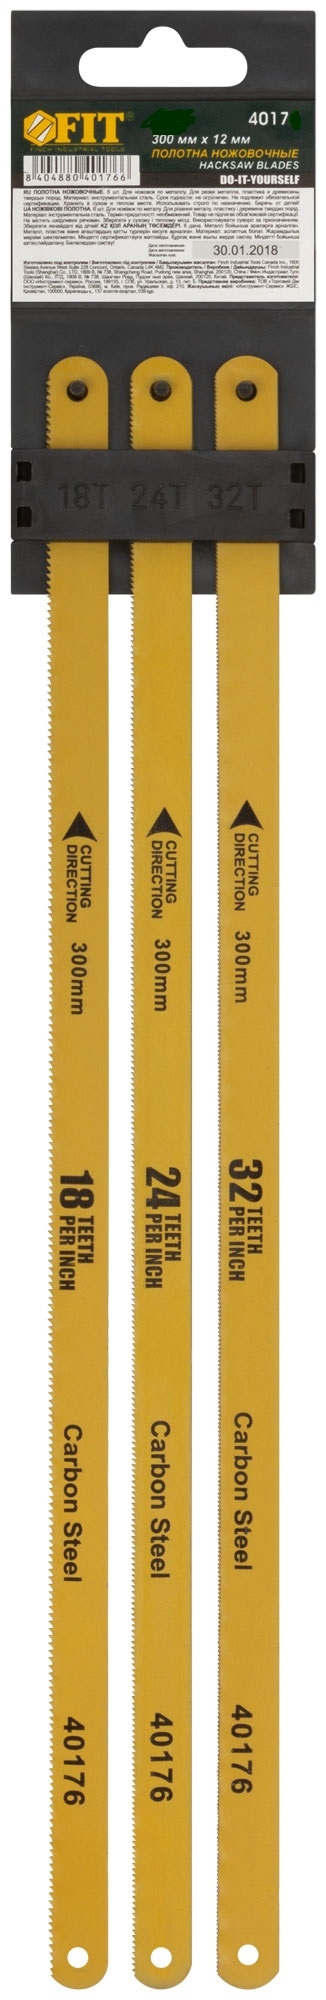 Полотна ножовочные по металлу, 300 мм, (18ТPI+24ТPI+32ТPI/20Cr ), 3 шт. FIT 40175 полотна для электролобзика по металлу grossmeister